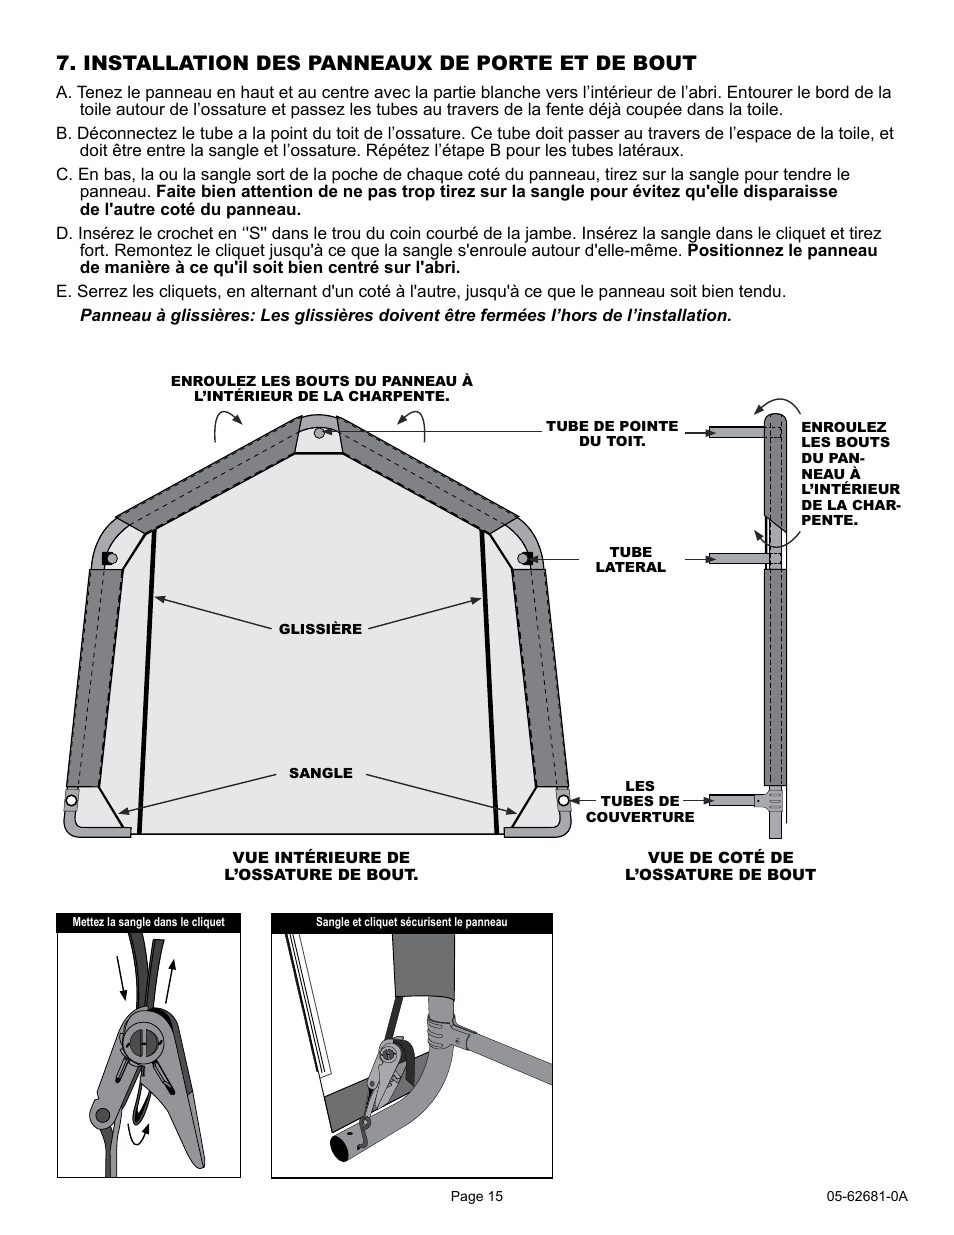 Installation des panneaux de porte et de bout | ShelterLogic 62681 10 x 15  x 8 AutoShelter 1015 User Manual | Page 15 / 24 | Original mode